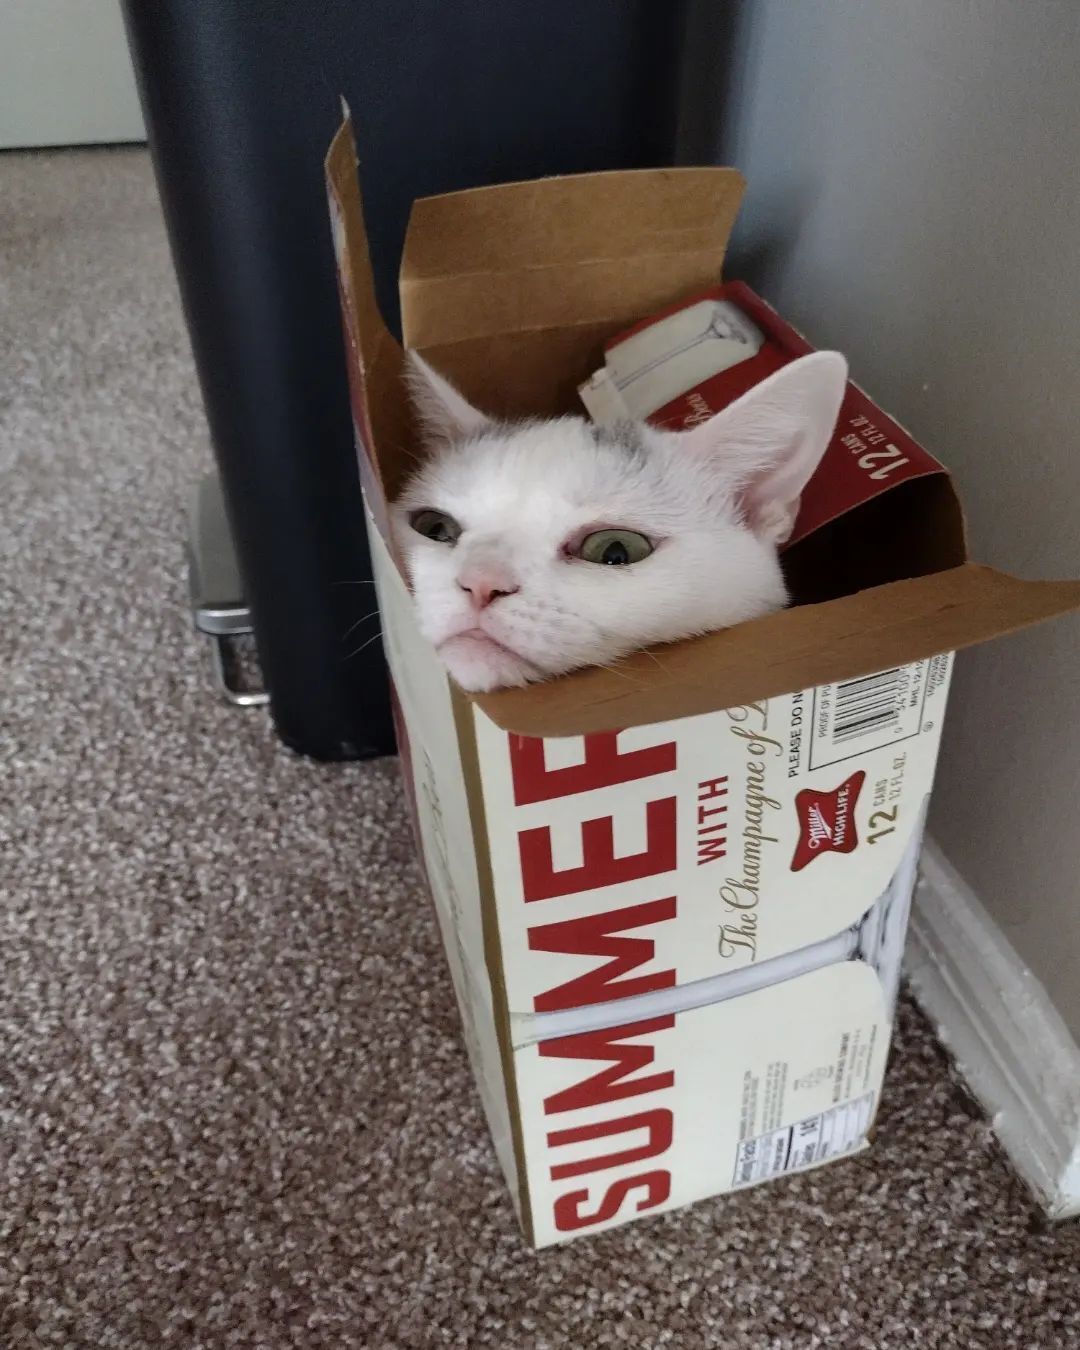 Новая Grumpy Cat. Кошка из Теннеси стала звездой сети благодаря мрачной мордашке